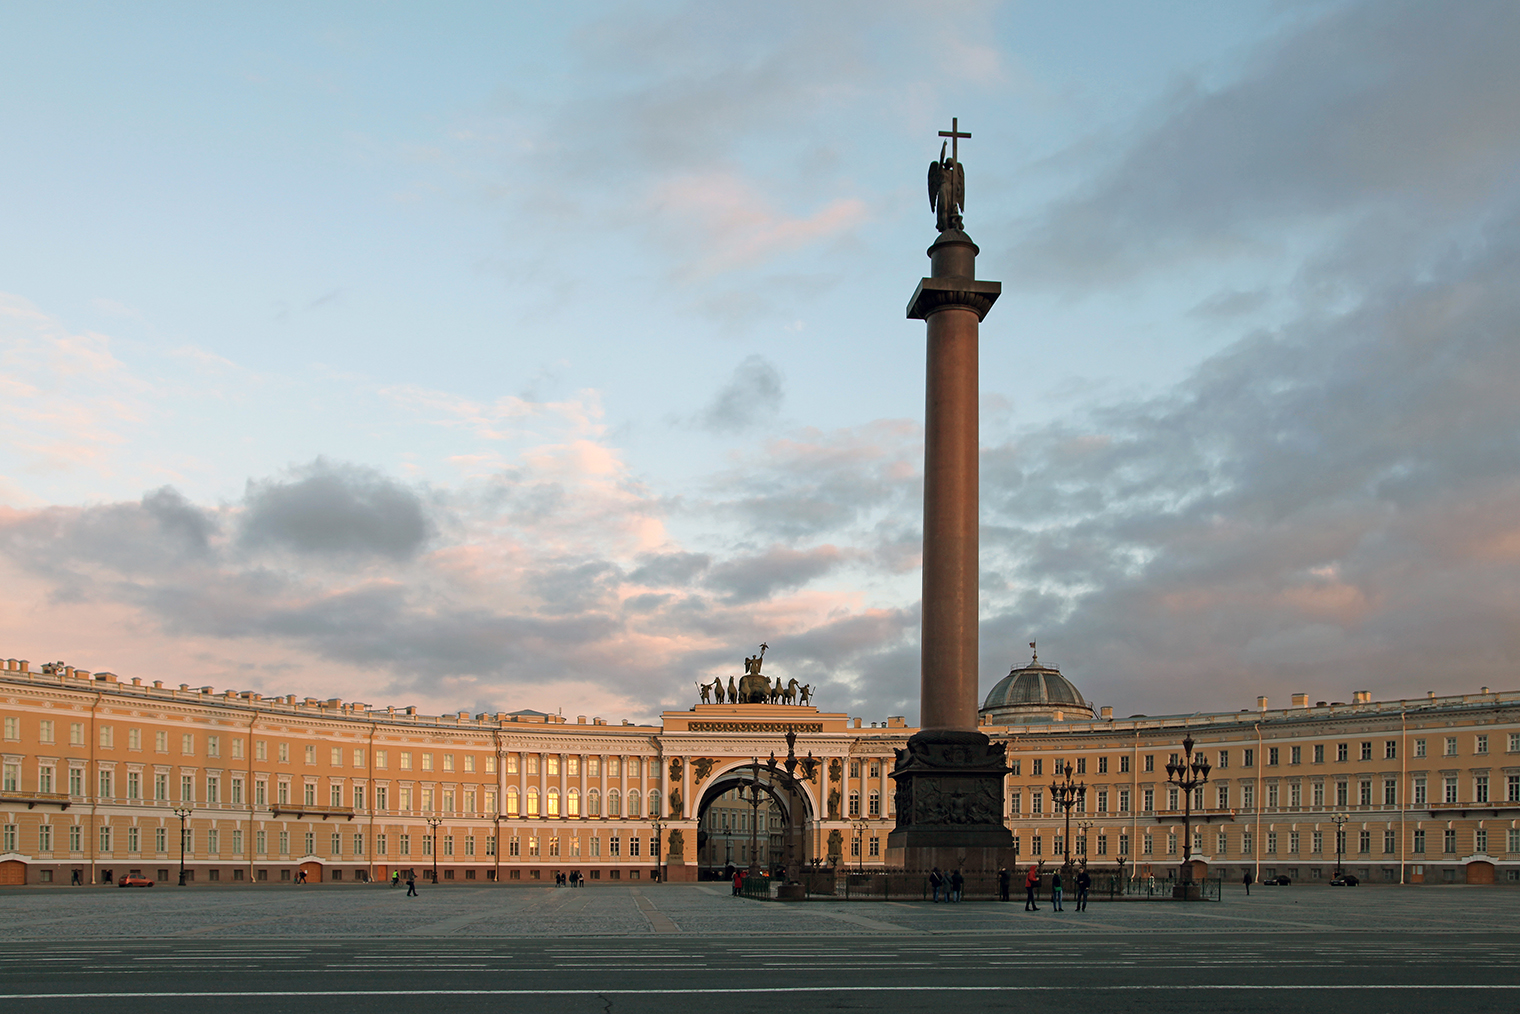 Та самая Александровская колонна, с которой сравнивал свою славу Пушкин. Фото: Dmitry Erokhin / Shutterstock